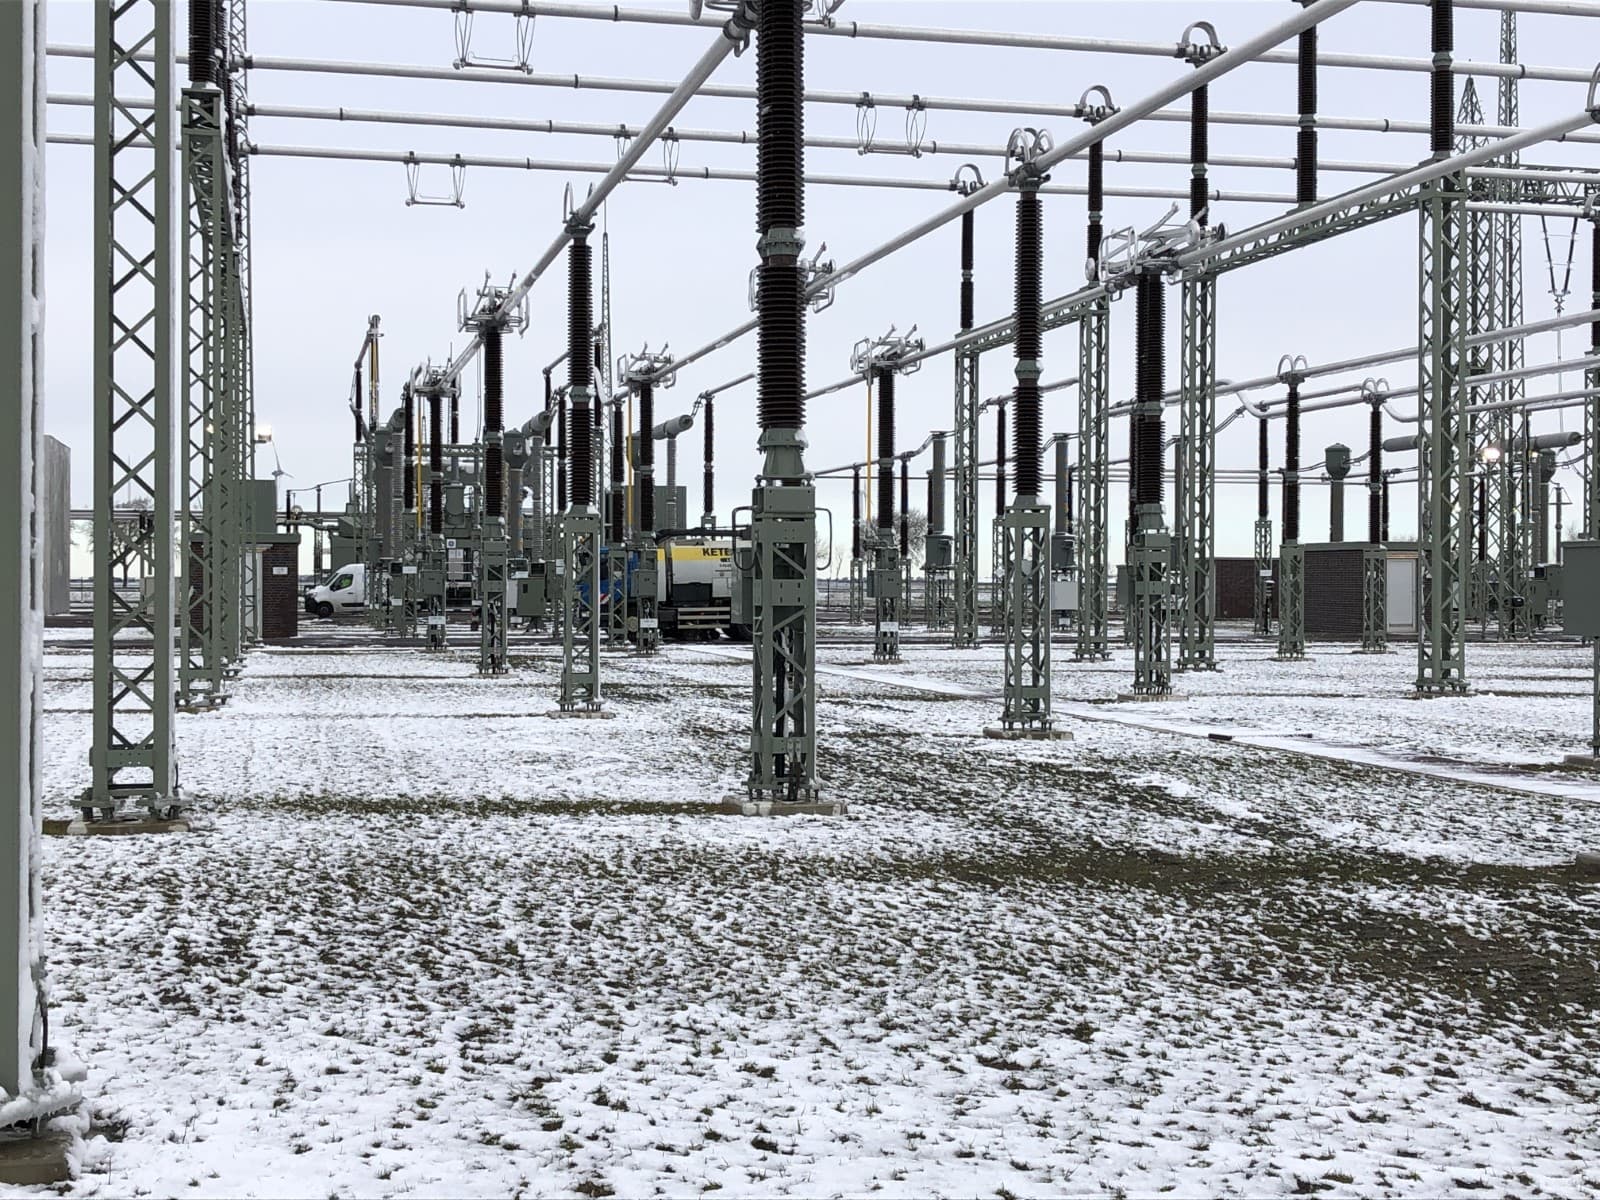 22-03-31 Strom net Umspannwerk Klixbüll/Süd